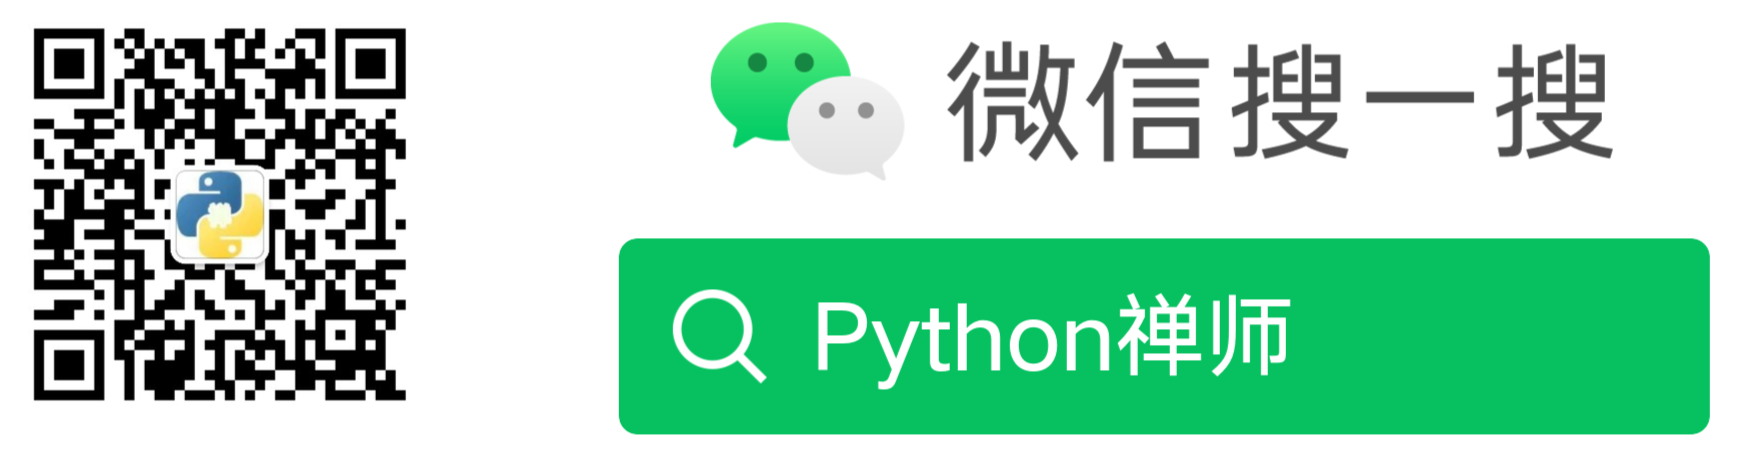 微信公眾號：Python禪師